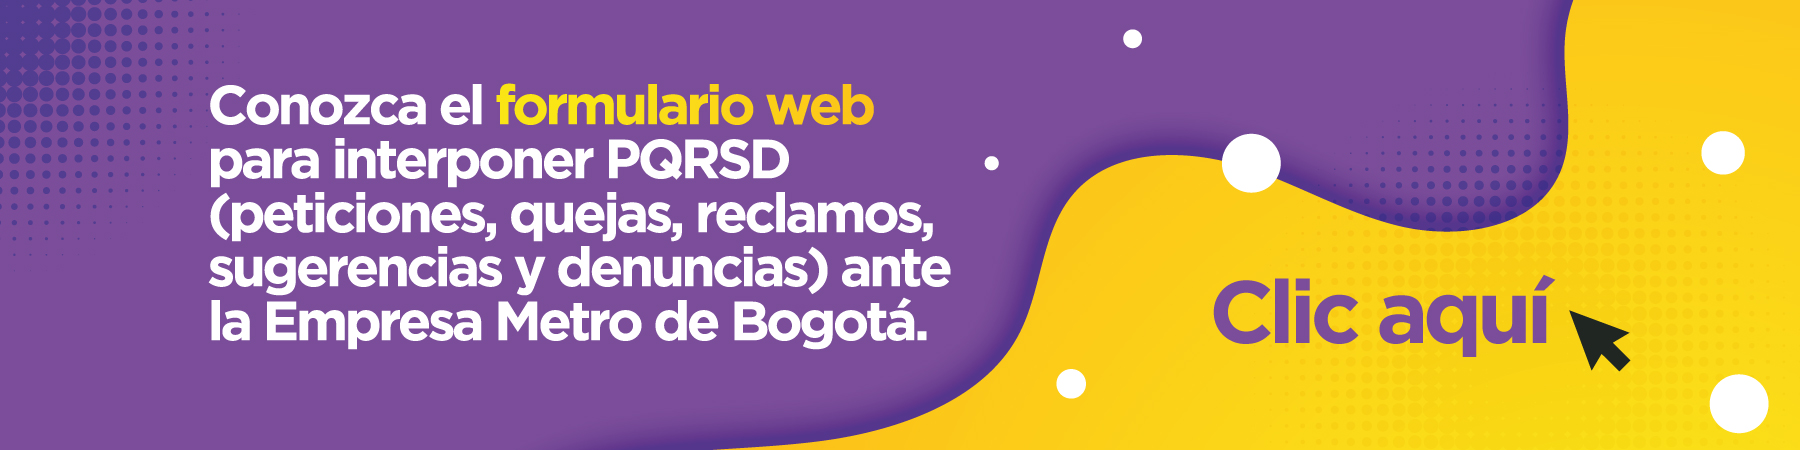 Conozca el formulario web para interponer PQRSD (peticiones, quejas, reclamos, sugerencias y denuncias) ante la Empresa Metro de Bogotá